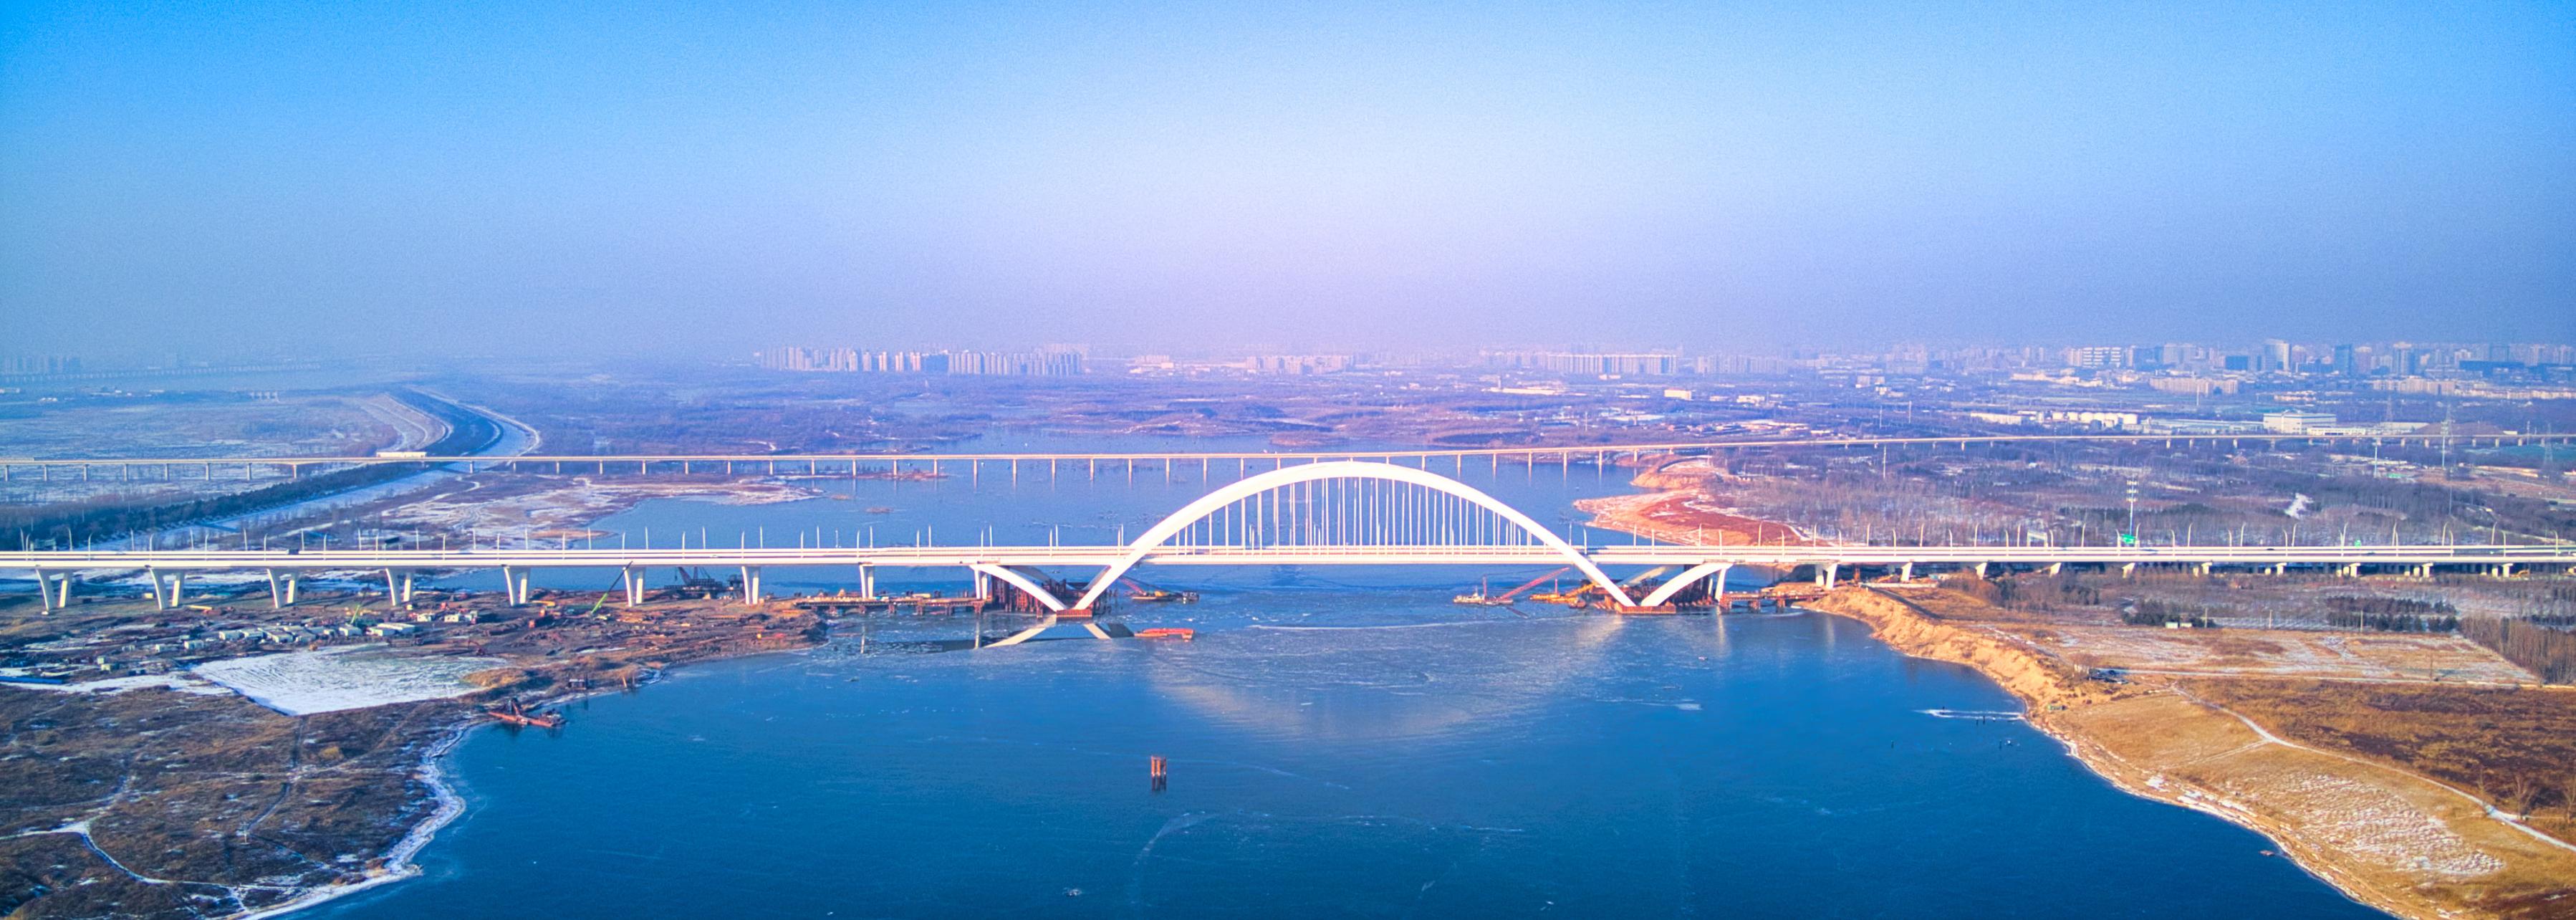 京雄高速公路（北京段）全线正式实现通车运营。受访方供图